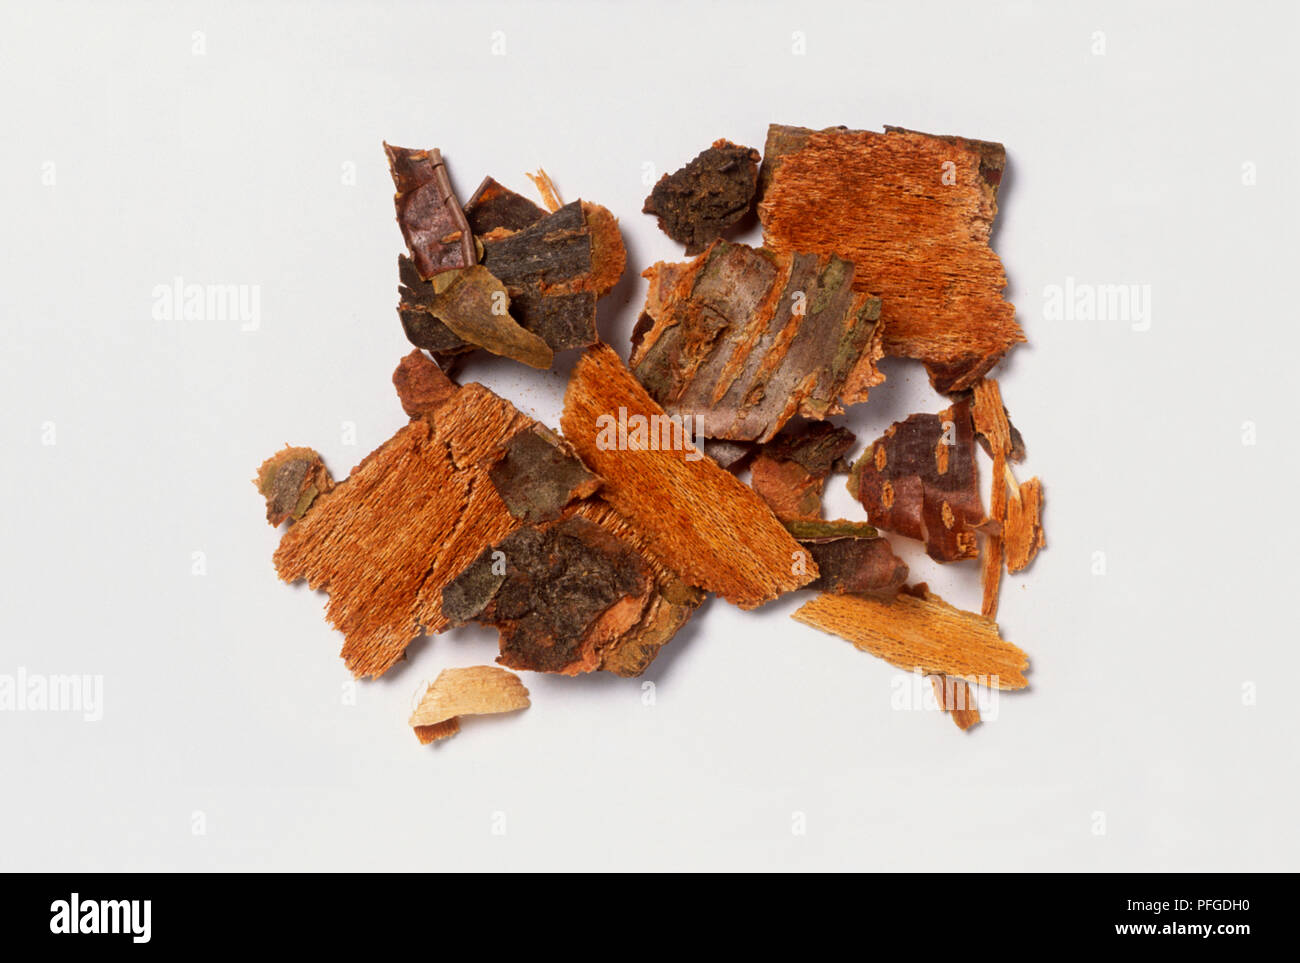 Pieces of bark from Prunus serotina (Black cherry tree) Stock Photo